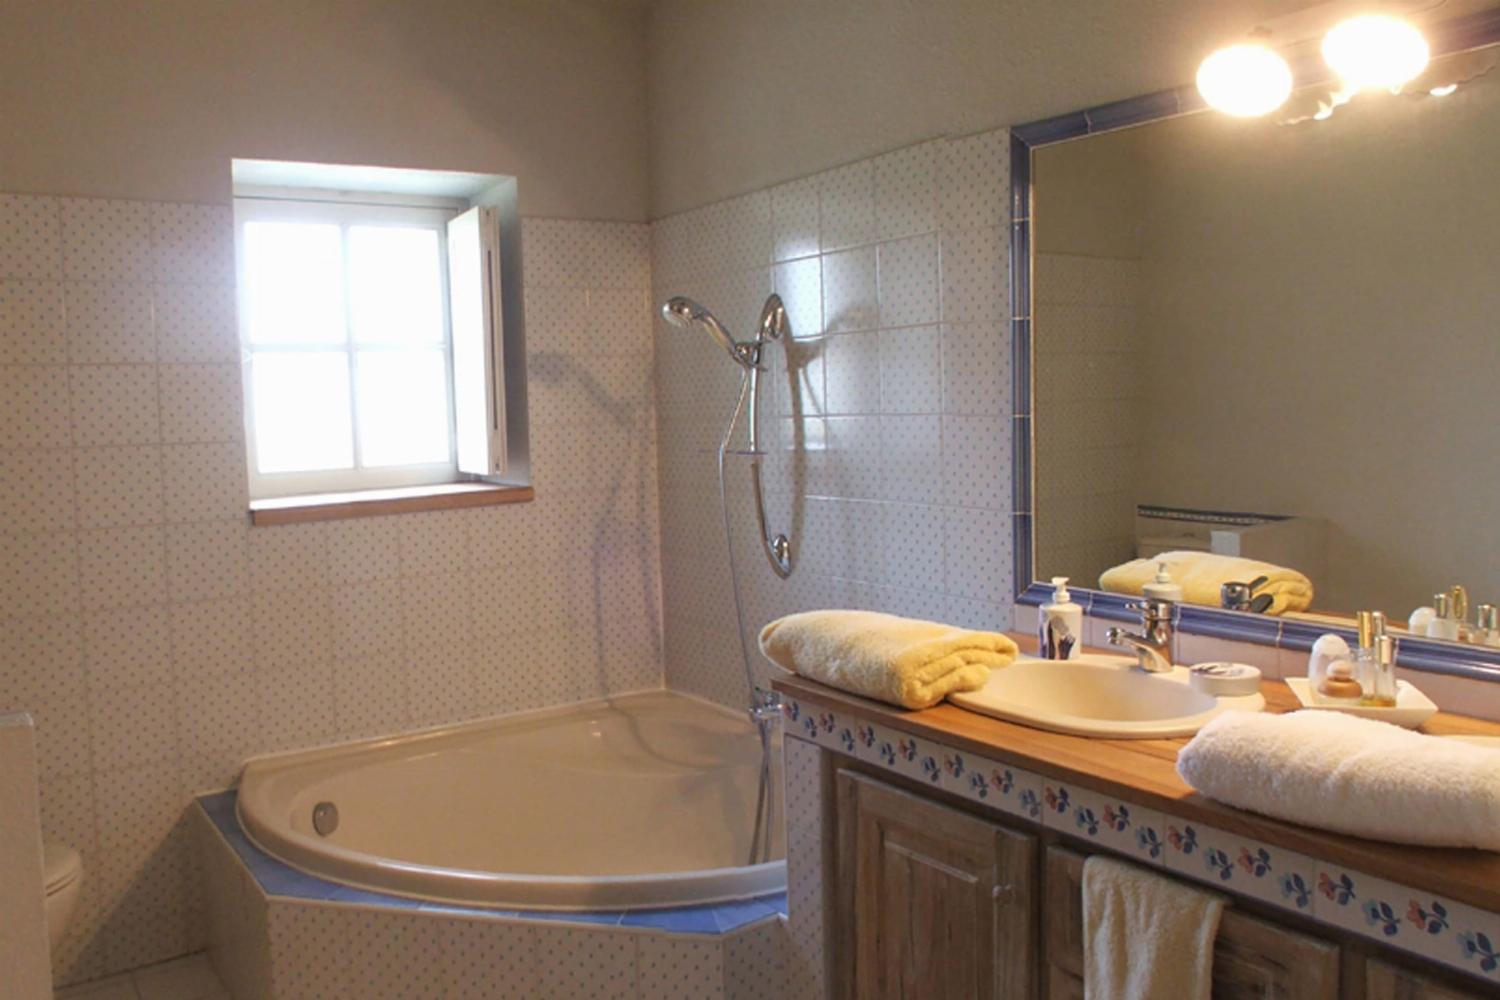 Salle de bain | Location de vacances dans le Vaucluse